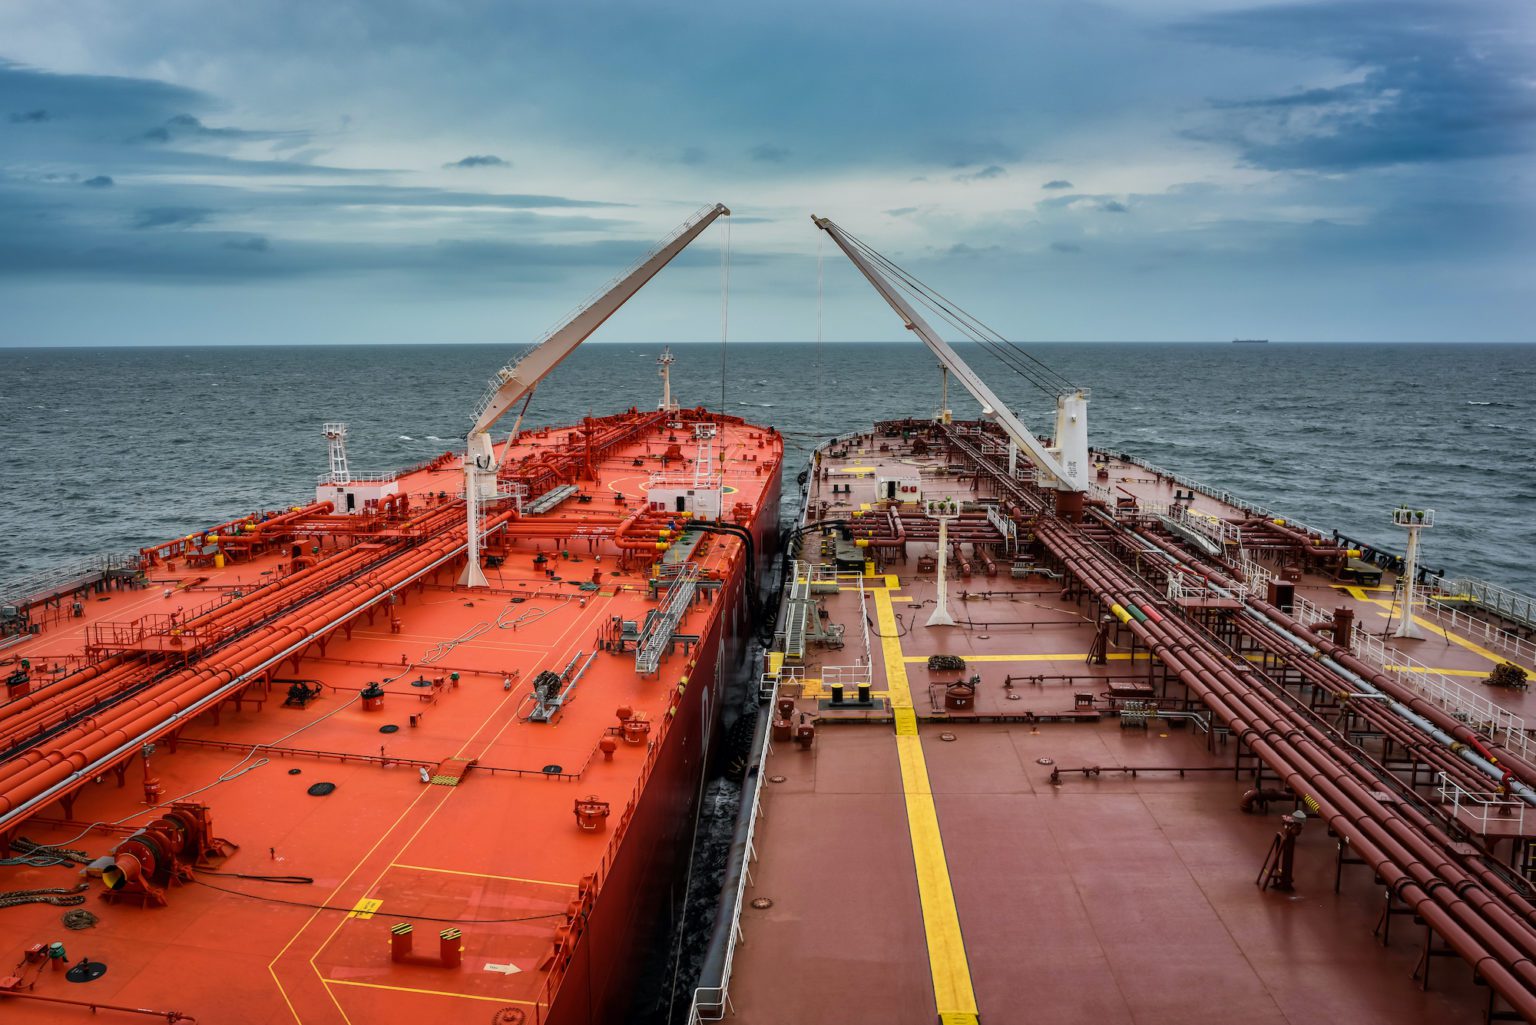 روسیه برای انتقال کشتی به کشتی نفت ترمینال شناور در دریای بالتیک ایجاد کرد